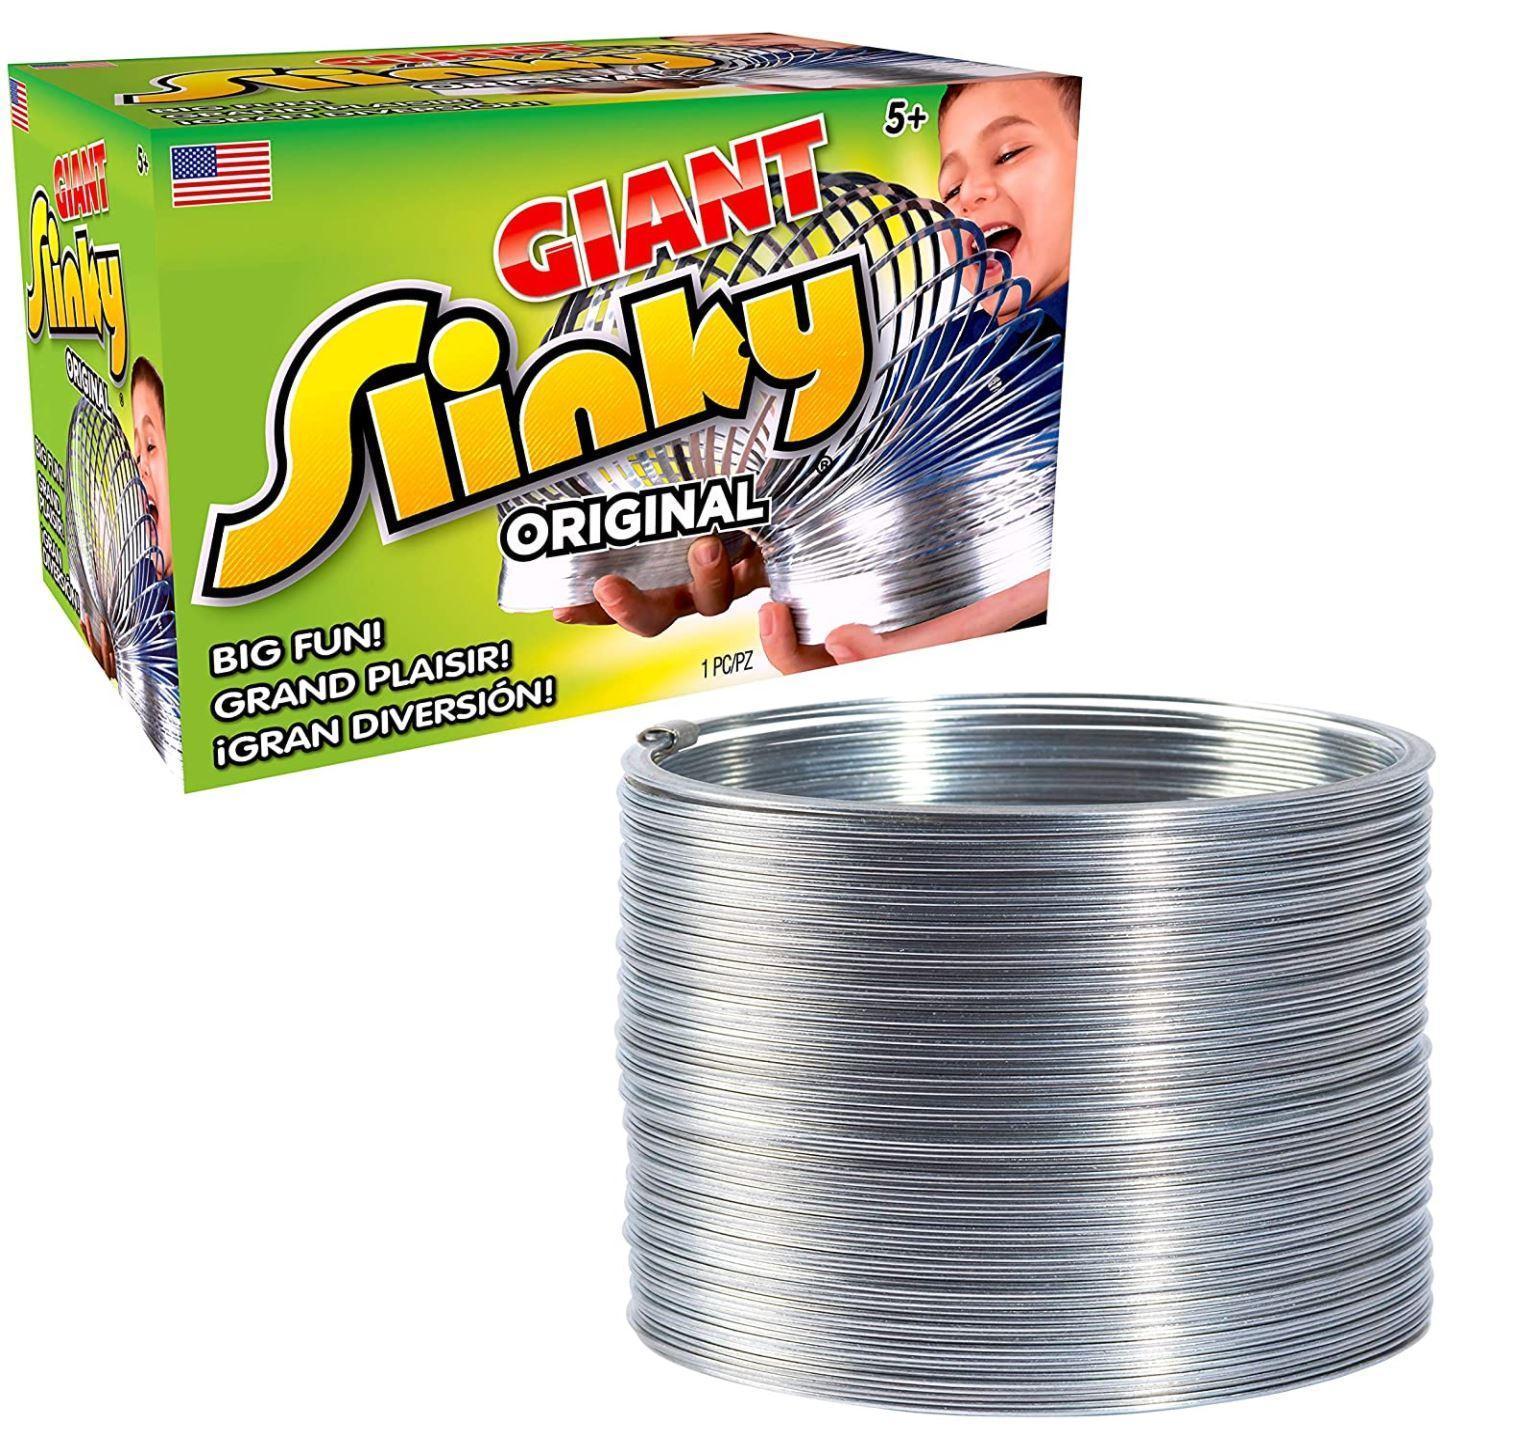 The Original Giant Slinky